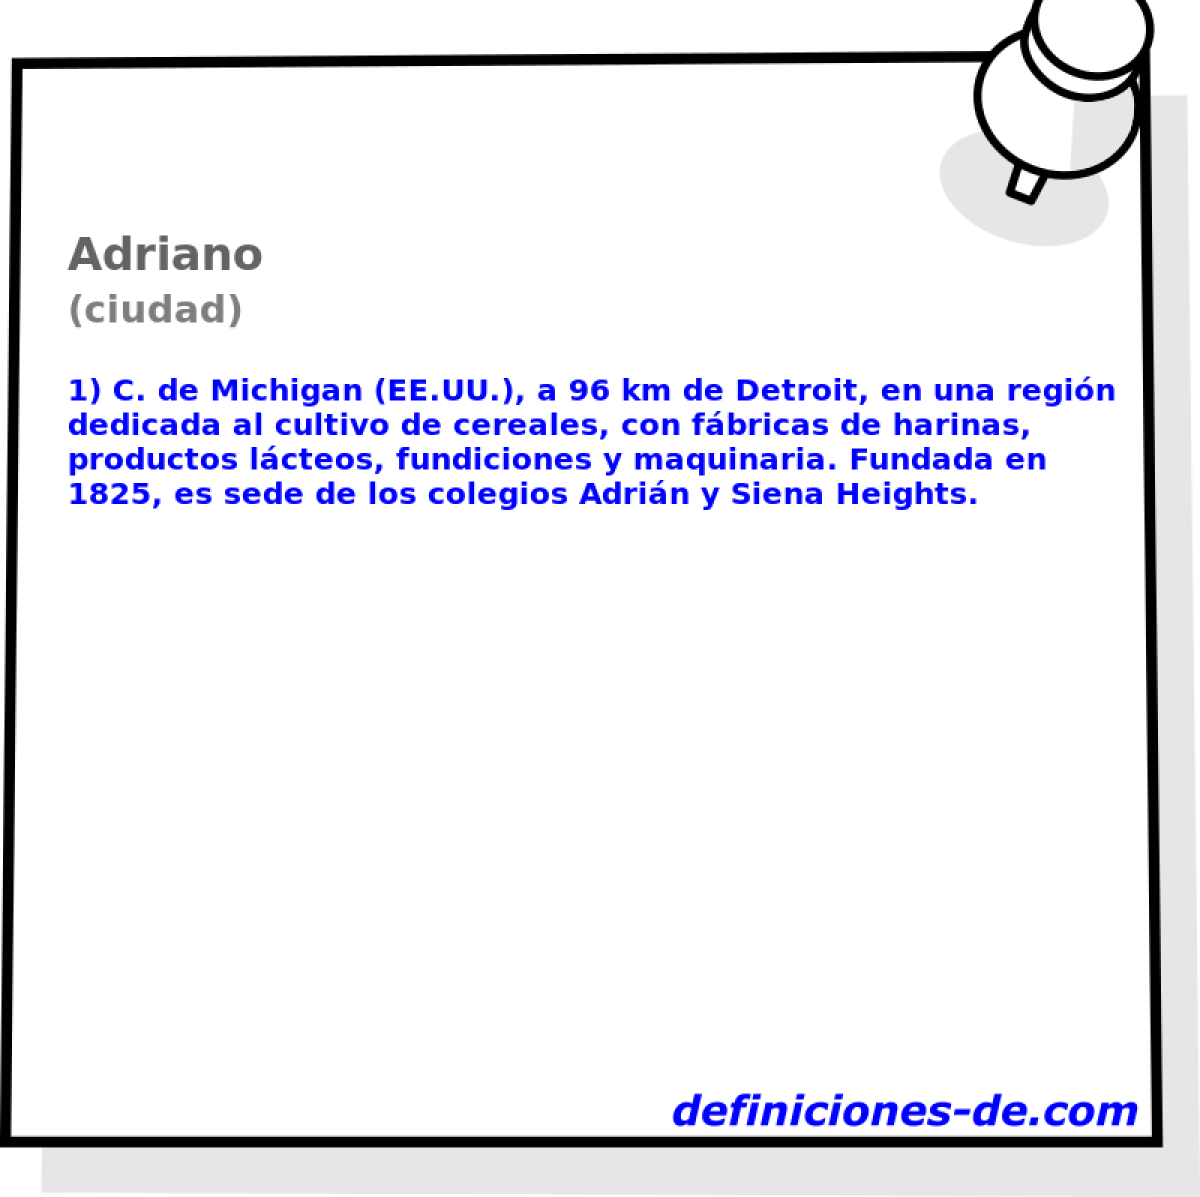 Adriano (ciudad)